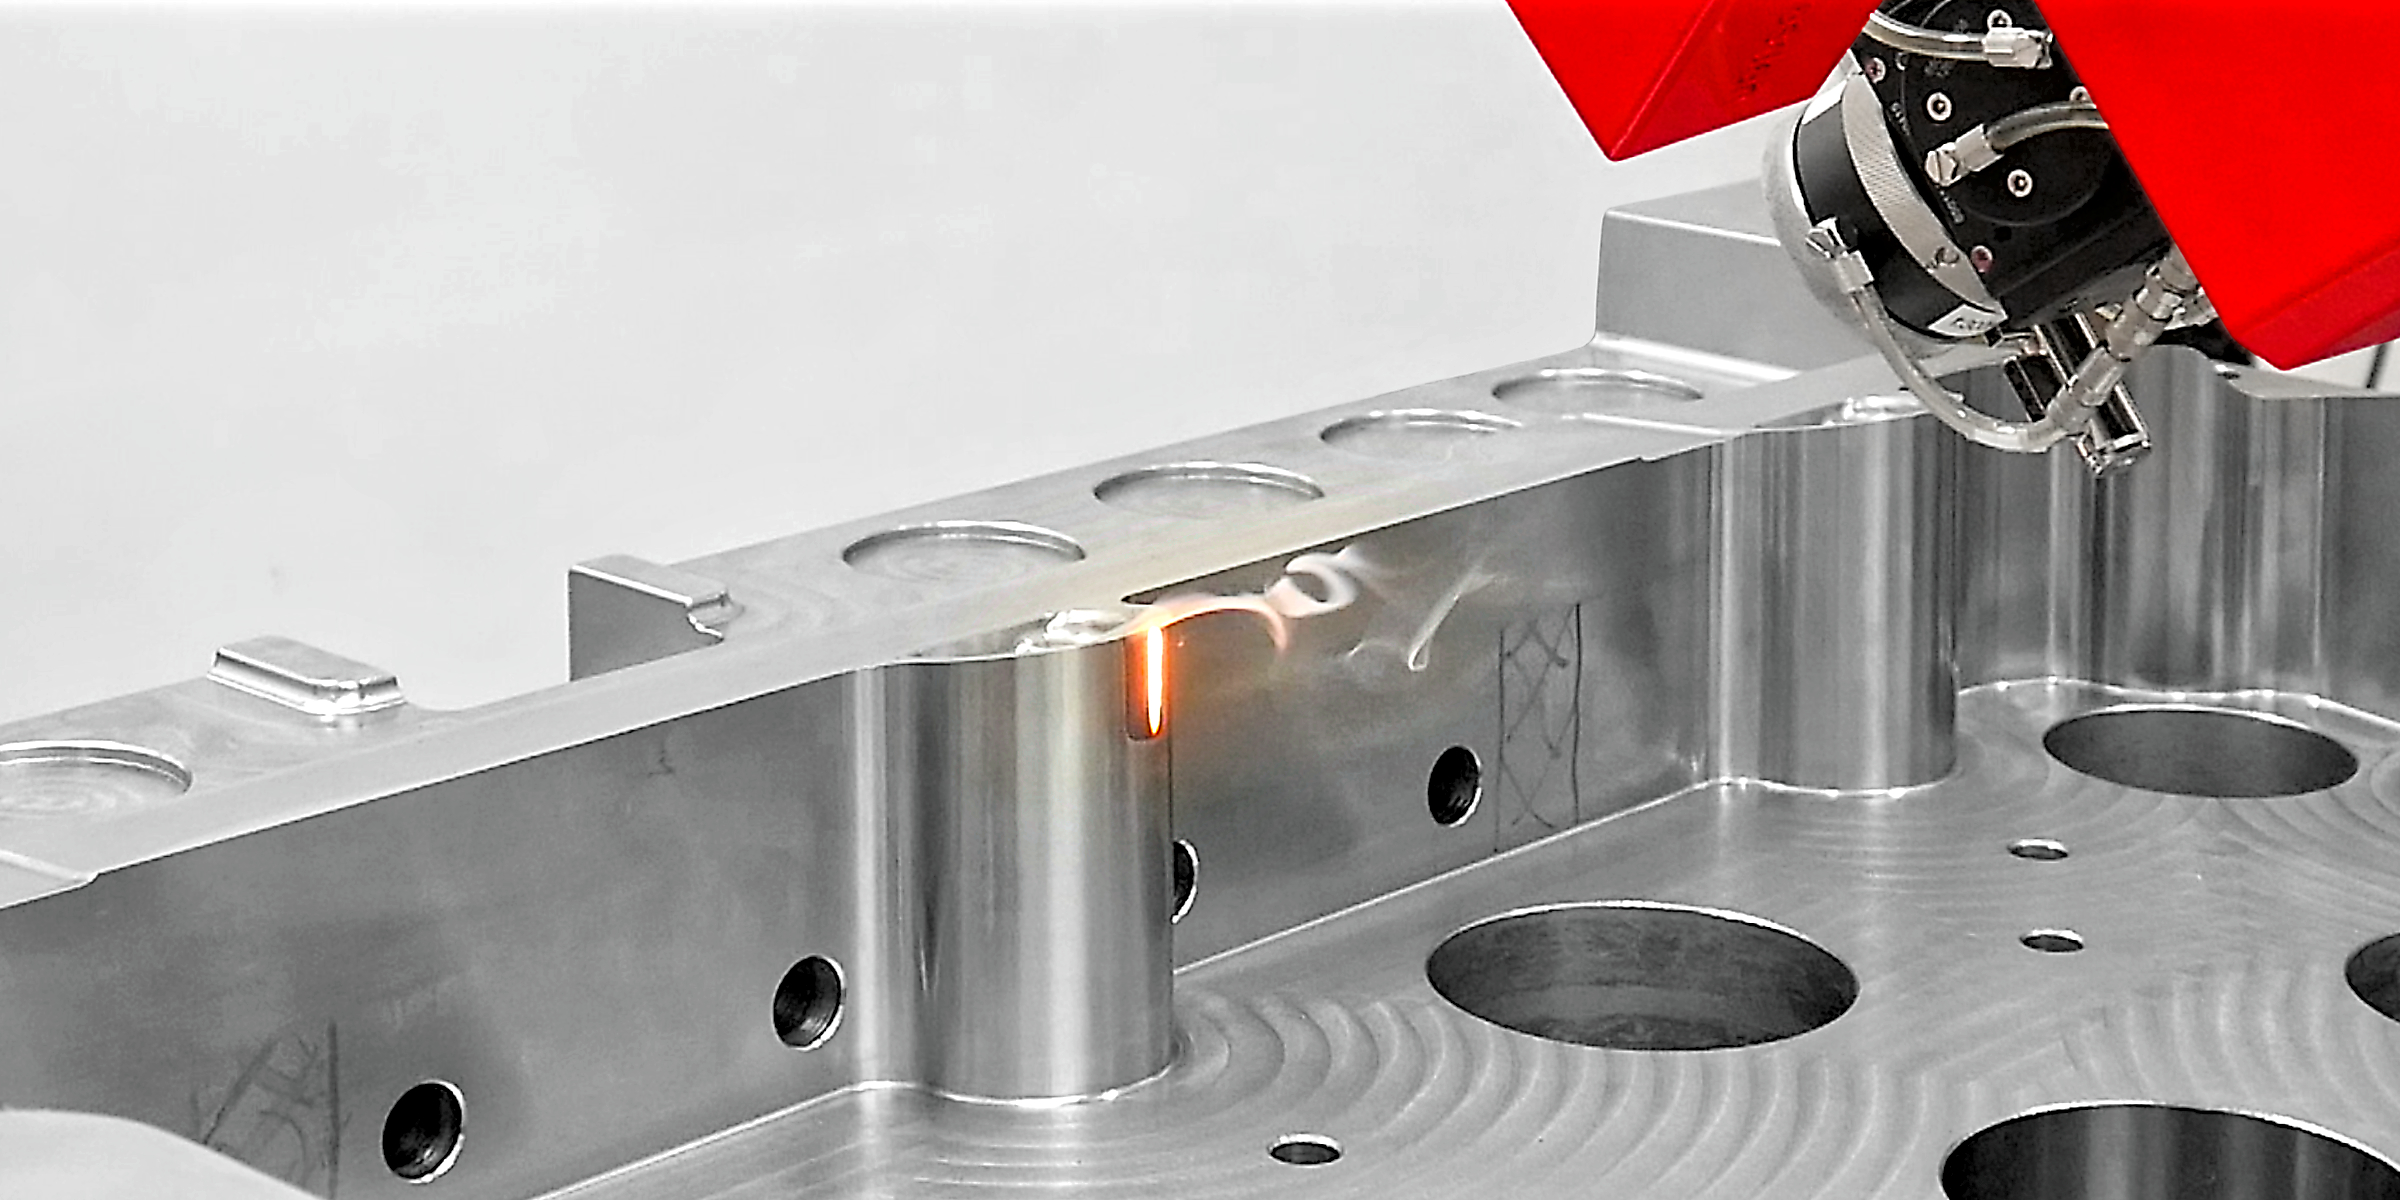 Laser hardening of a forming tool - Laserhärten eines Umformwerkzeuges